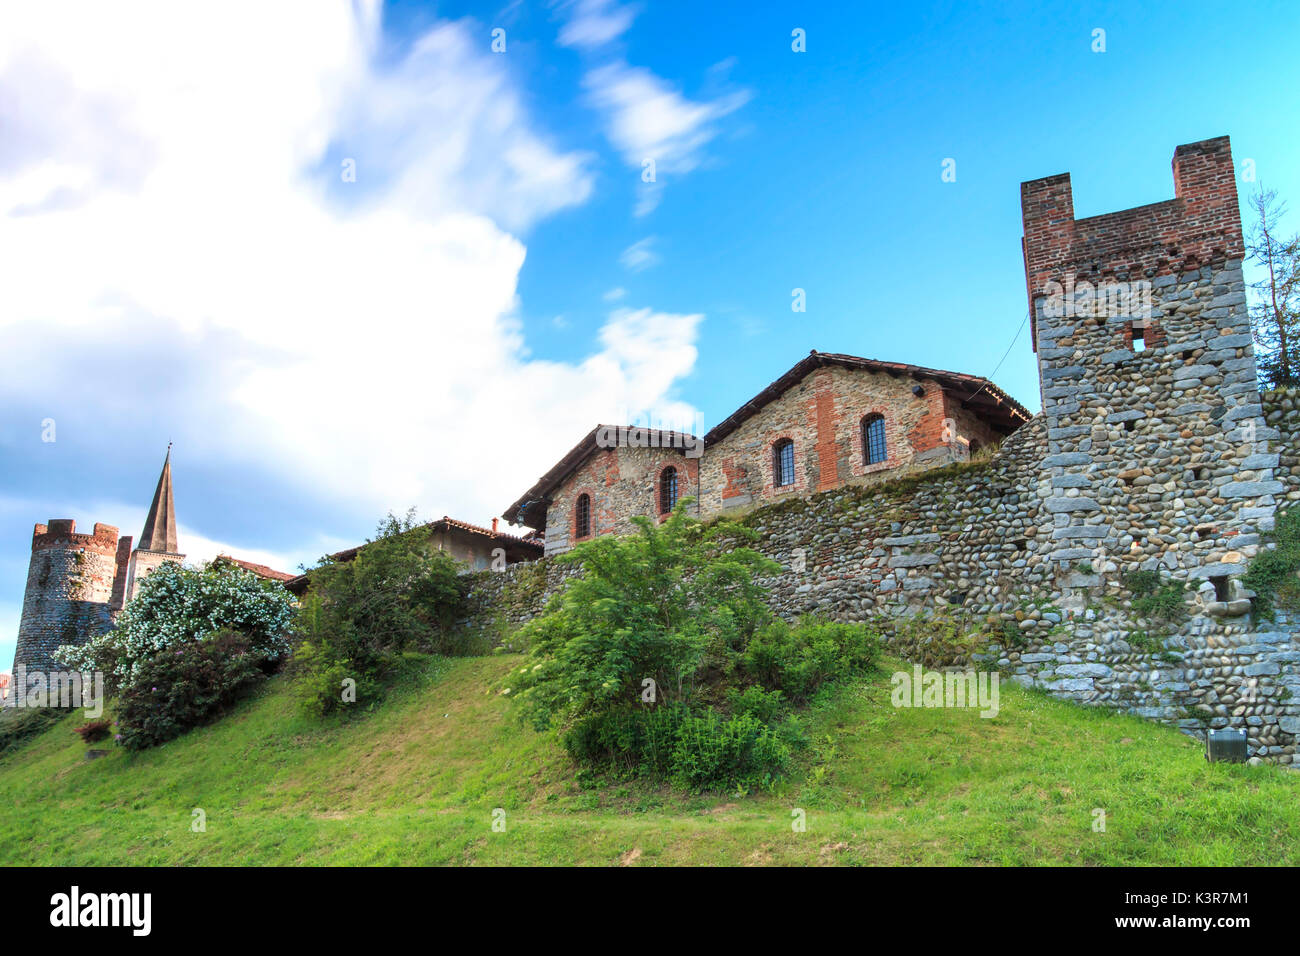 Europa, Italien, Piemont, Biella. Mittelalterliche Dorf Ricetto di Candelo verwendet als Zufluchtsort in Zeiten der Angriff während des Mittelalters. Stockfoto